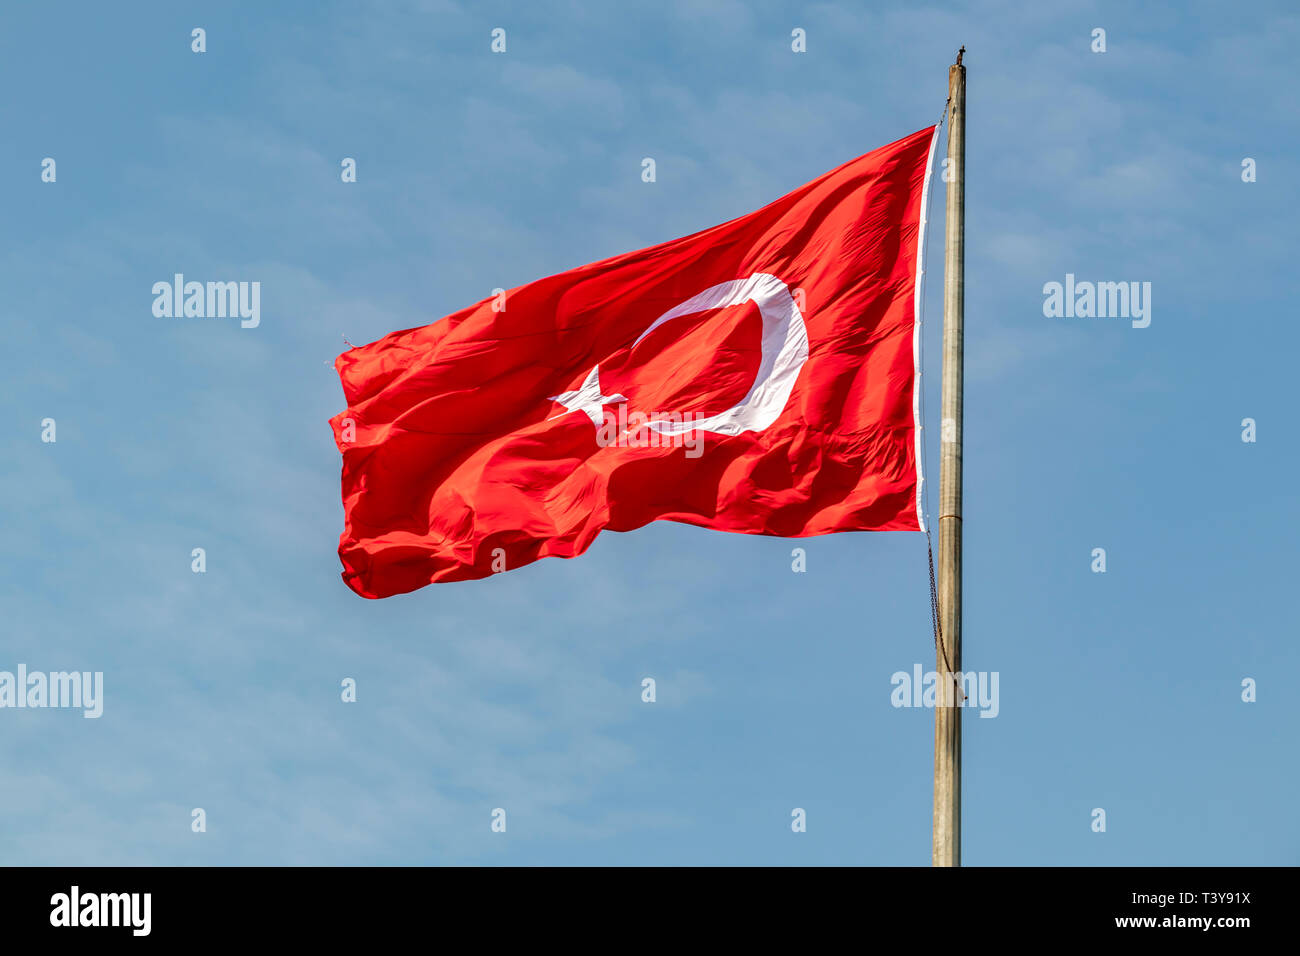 Rote Turkische Flagge Mit Mond Und Stern Am Fahnenmast Stockfotografie Alamy